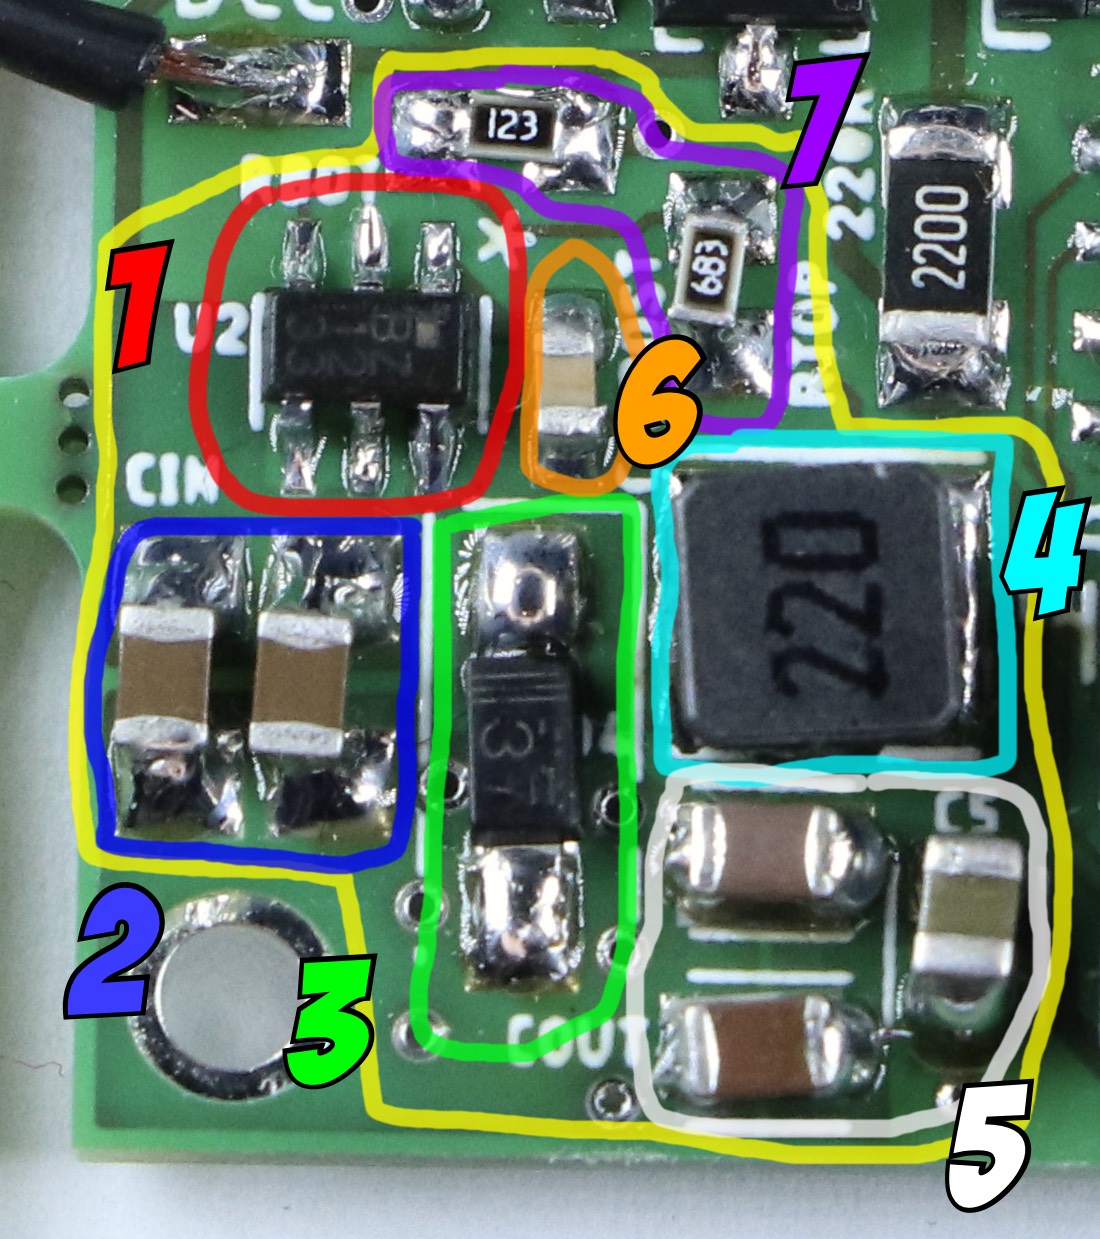 Ein größerer Ausschnitt aus dem letzten Foto. Er zeigt den selben Chip mit sechs Beinen, aber mit mehr Umgebung. Verschiedene Komponenten sind markiert und mit Nummern 1 bis 7 durchnummeriert.